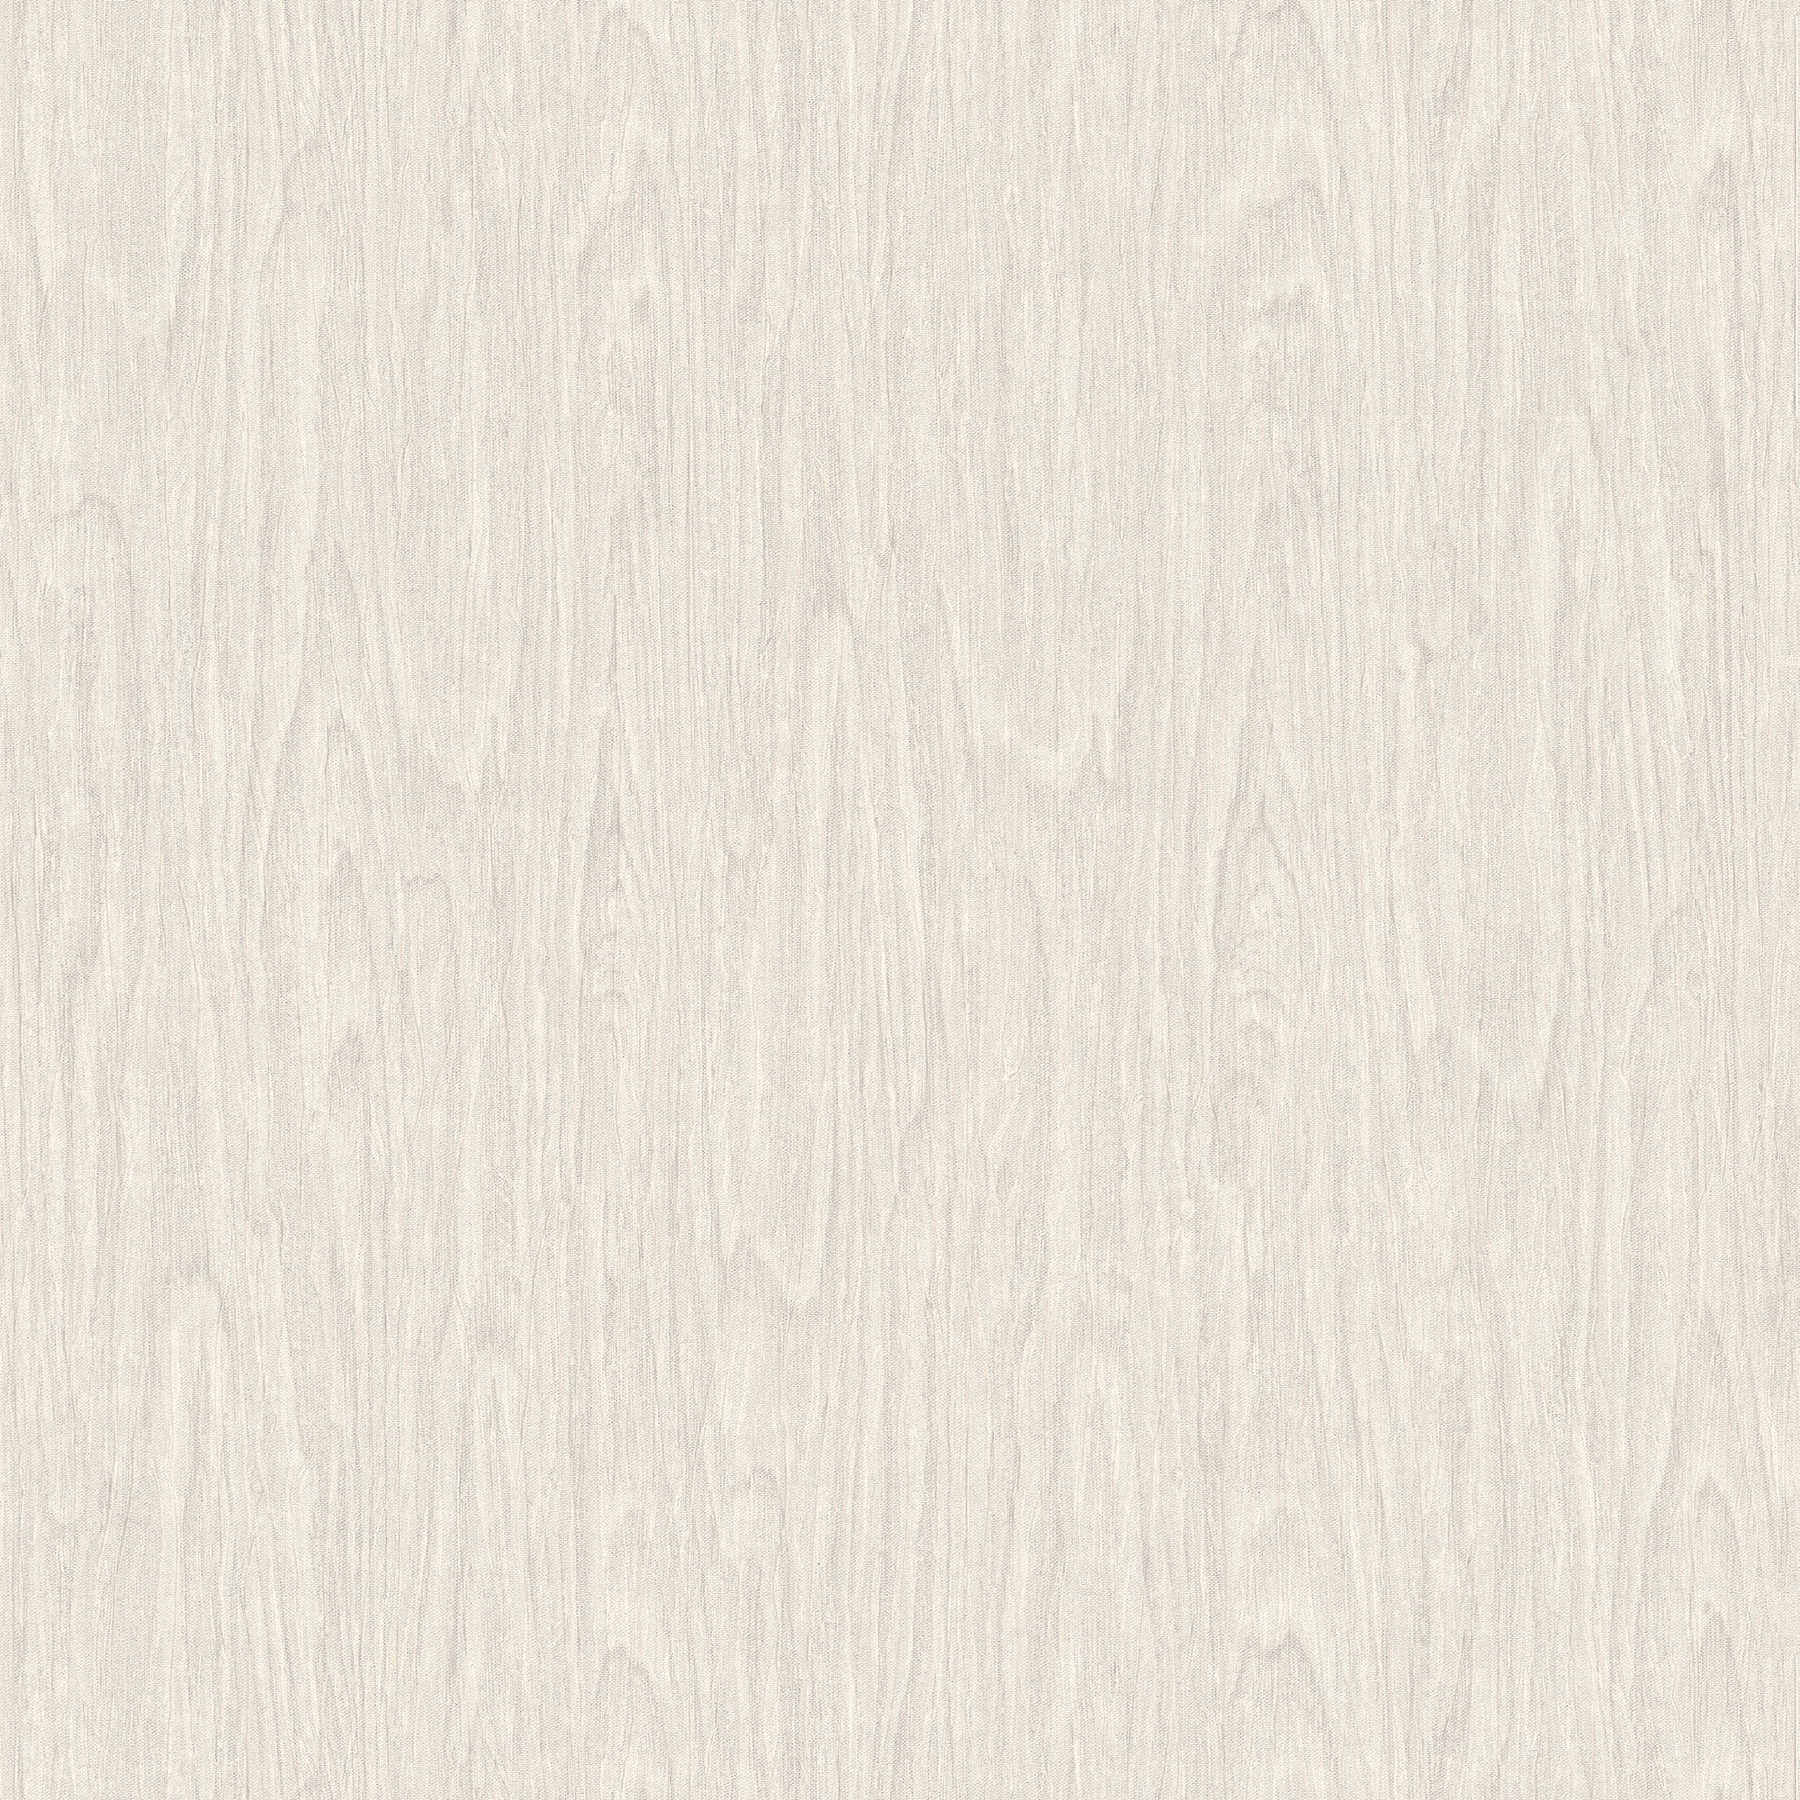 VERSACE Home Papier peint aspect bois réaliste - beige, crème, blanc
